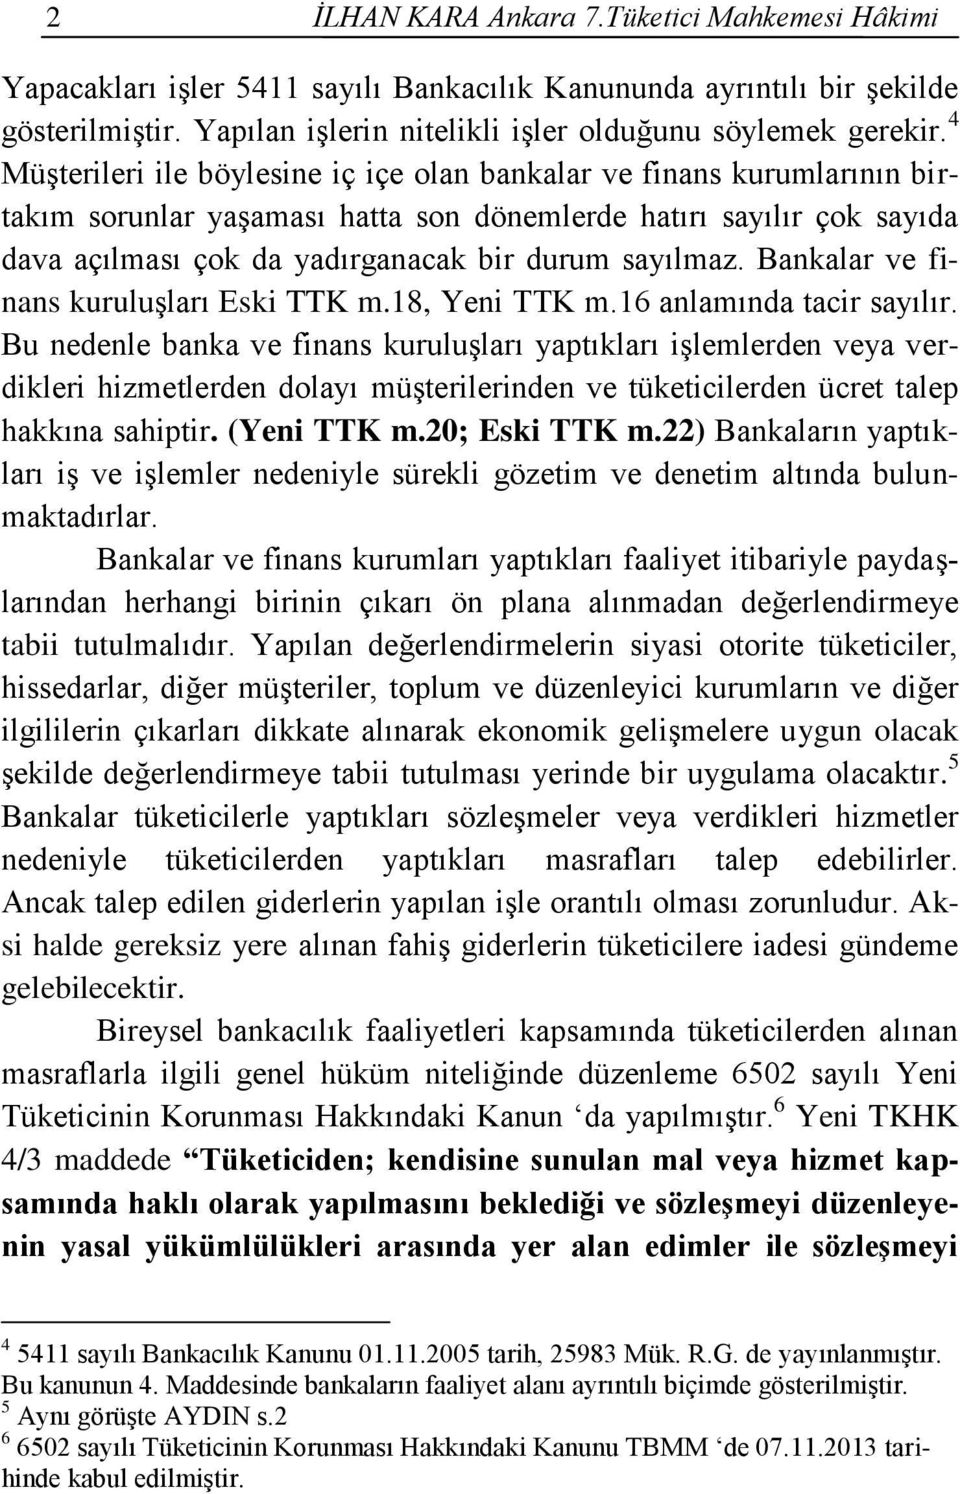 Bankalar ve finans kuruluşları Eski TTK m.18, Yeni TTK m.16 anlamında tacir sayılır.